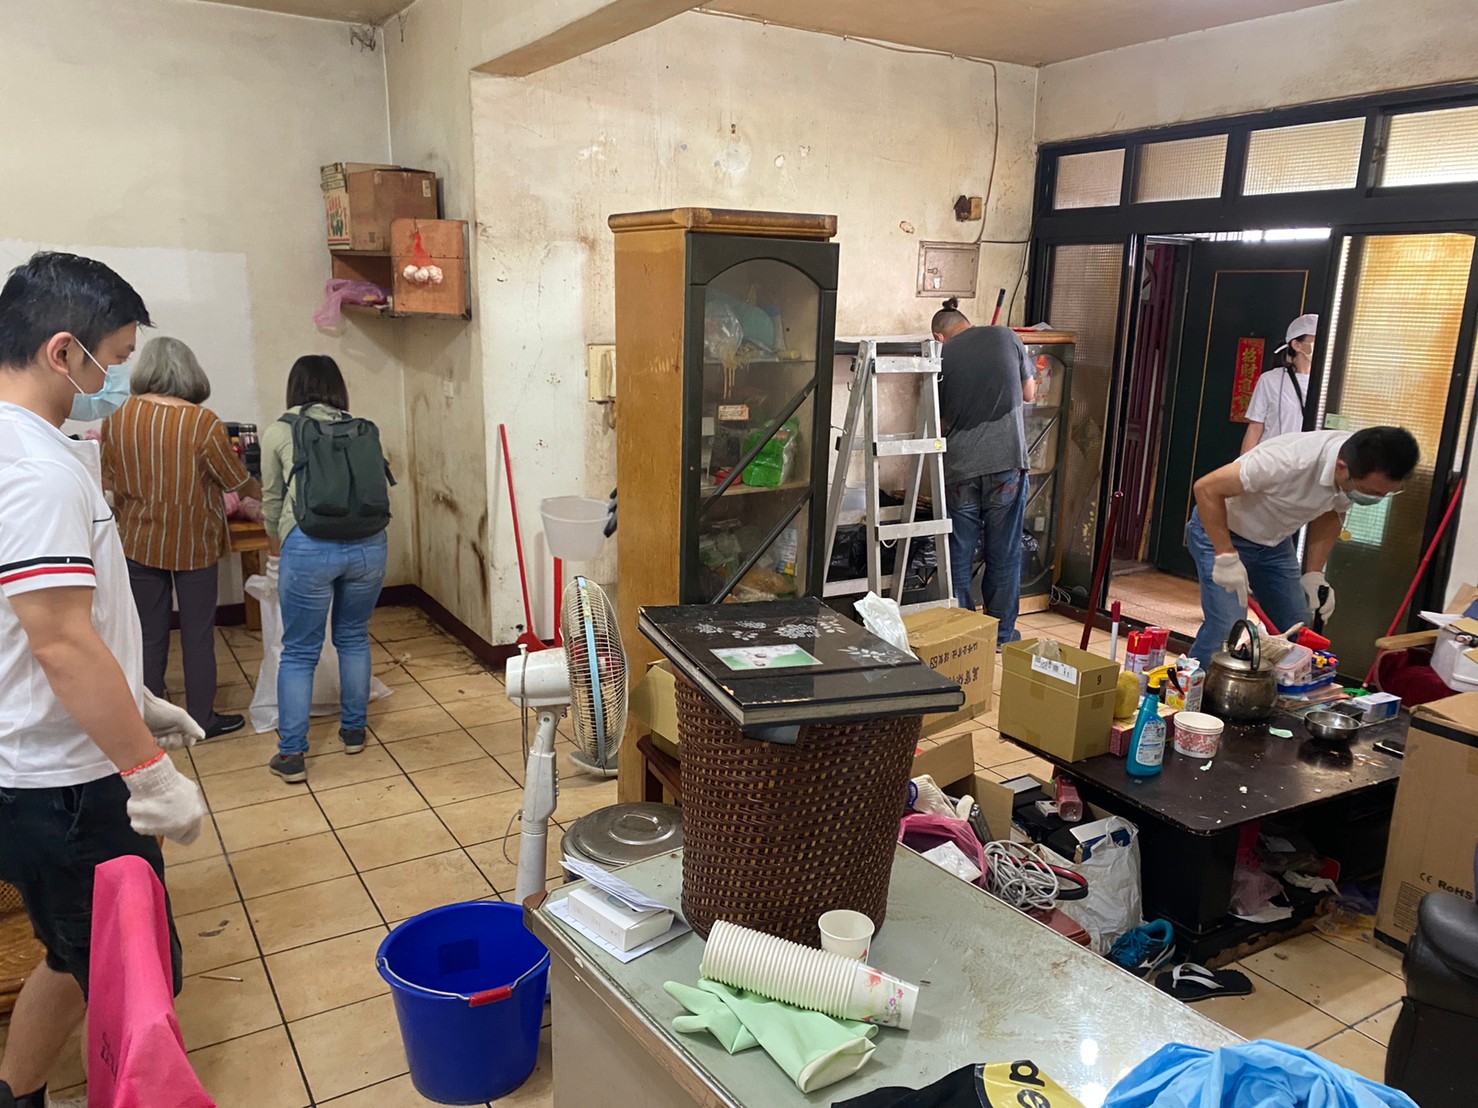 綠家扶輪社協助蘆洲區潘姓一家清潔修繕住屋環境。